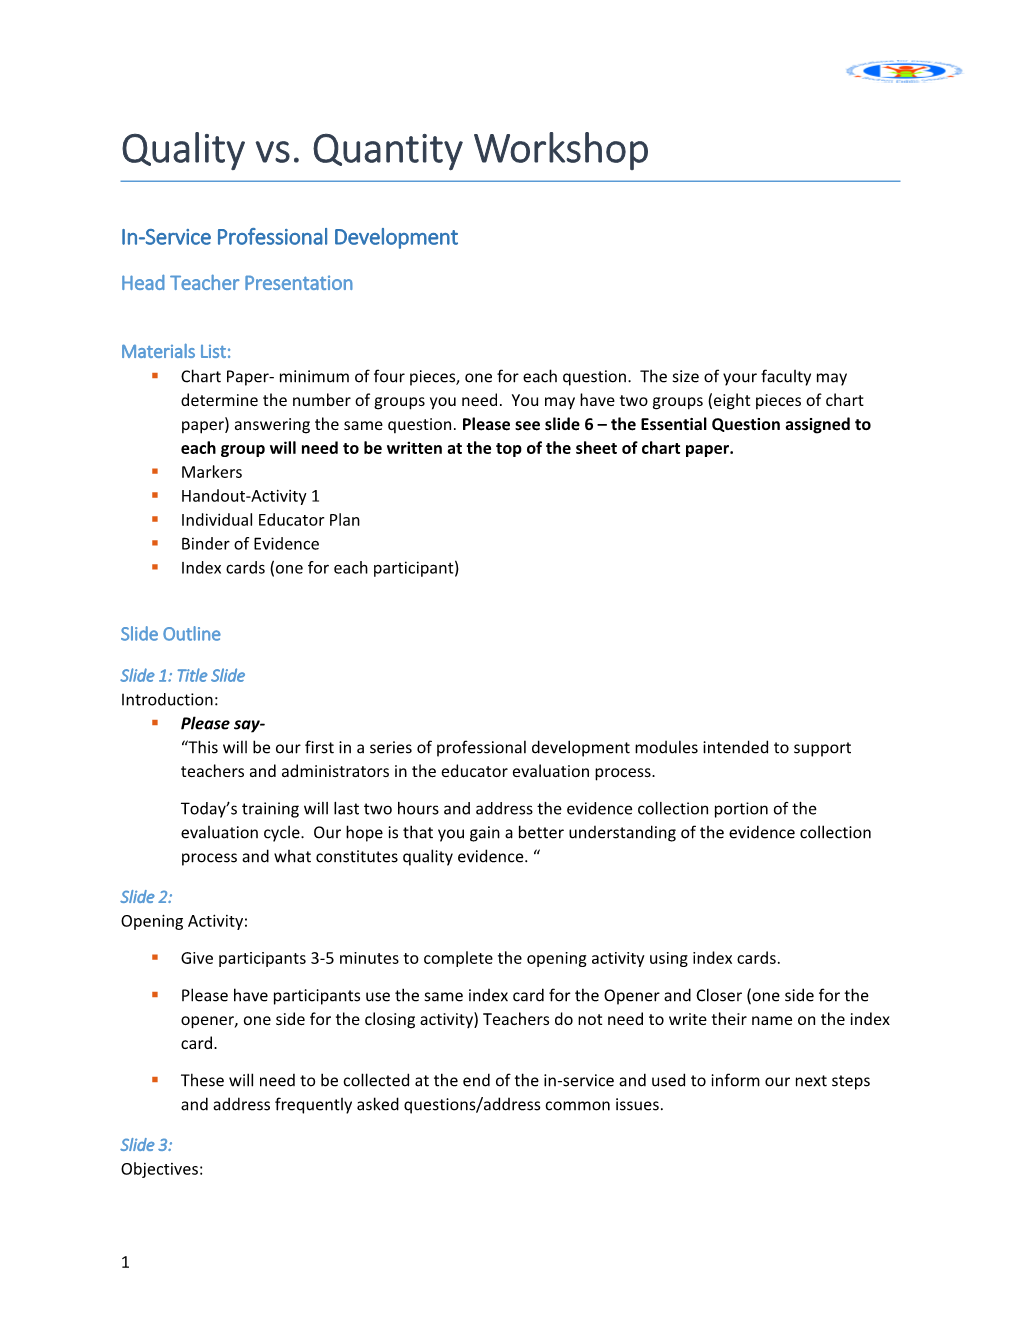 Brockton Public Schools: Quality Vs Quantity Workshop Facilitator Notes